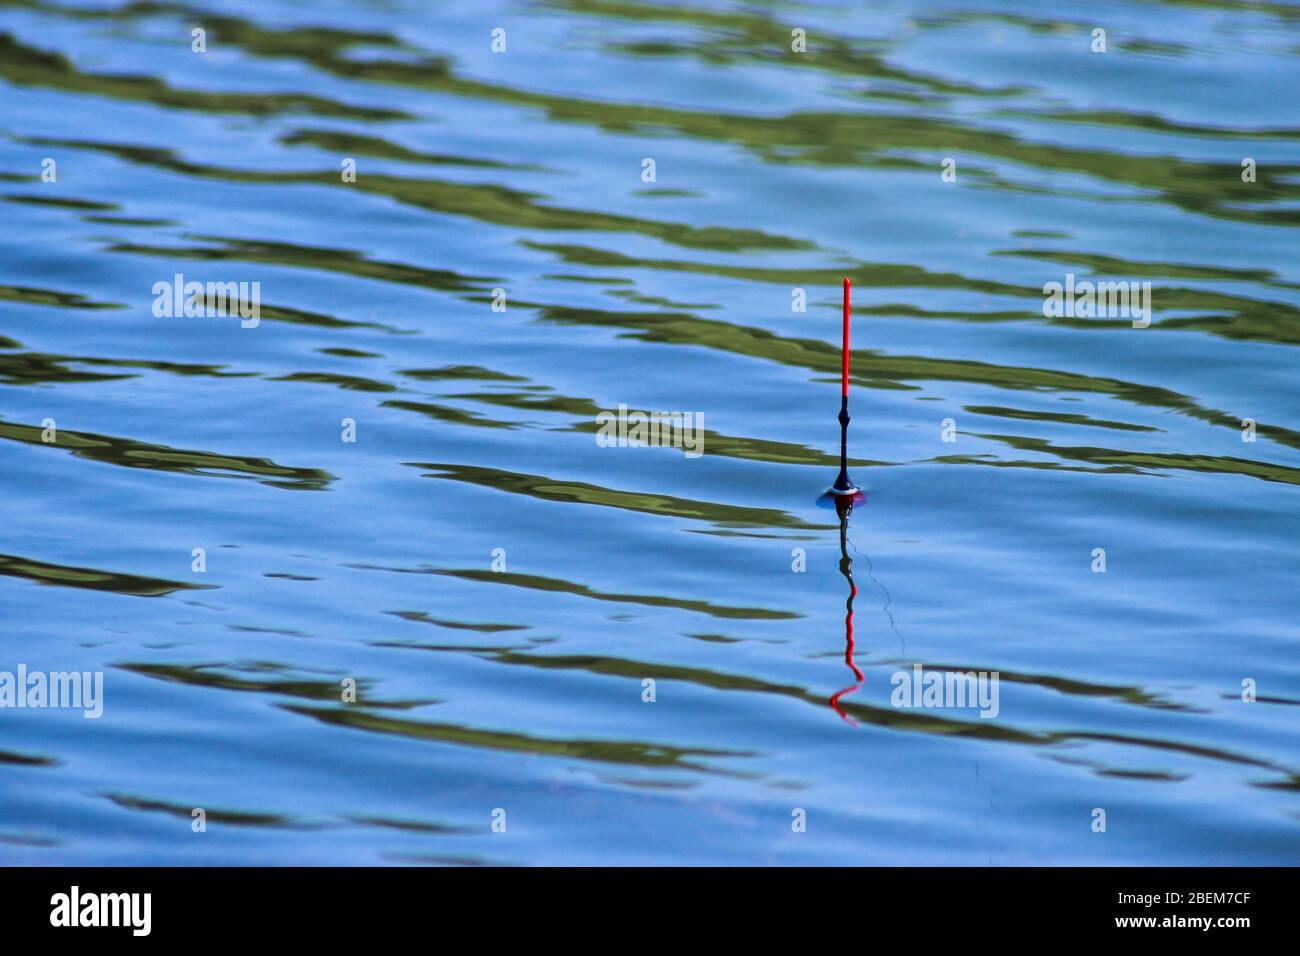 La pêche flottent sur l'eau en prévision de mordre Banque D'Images